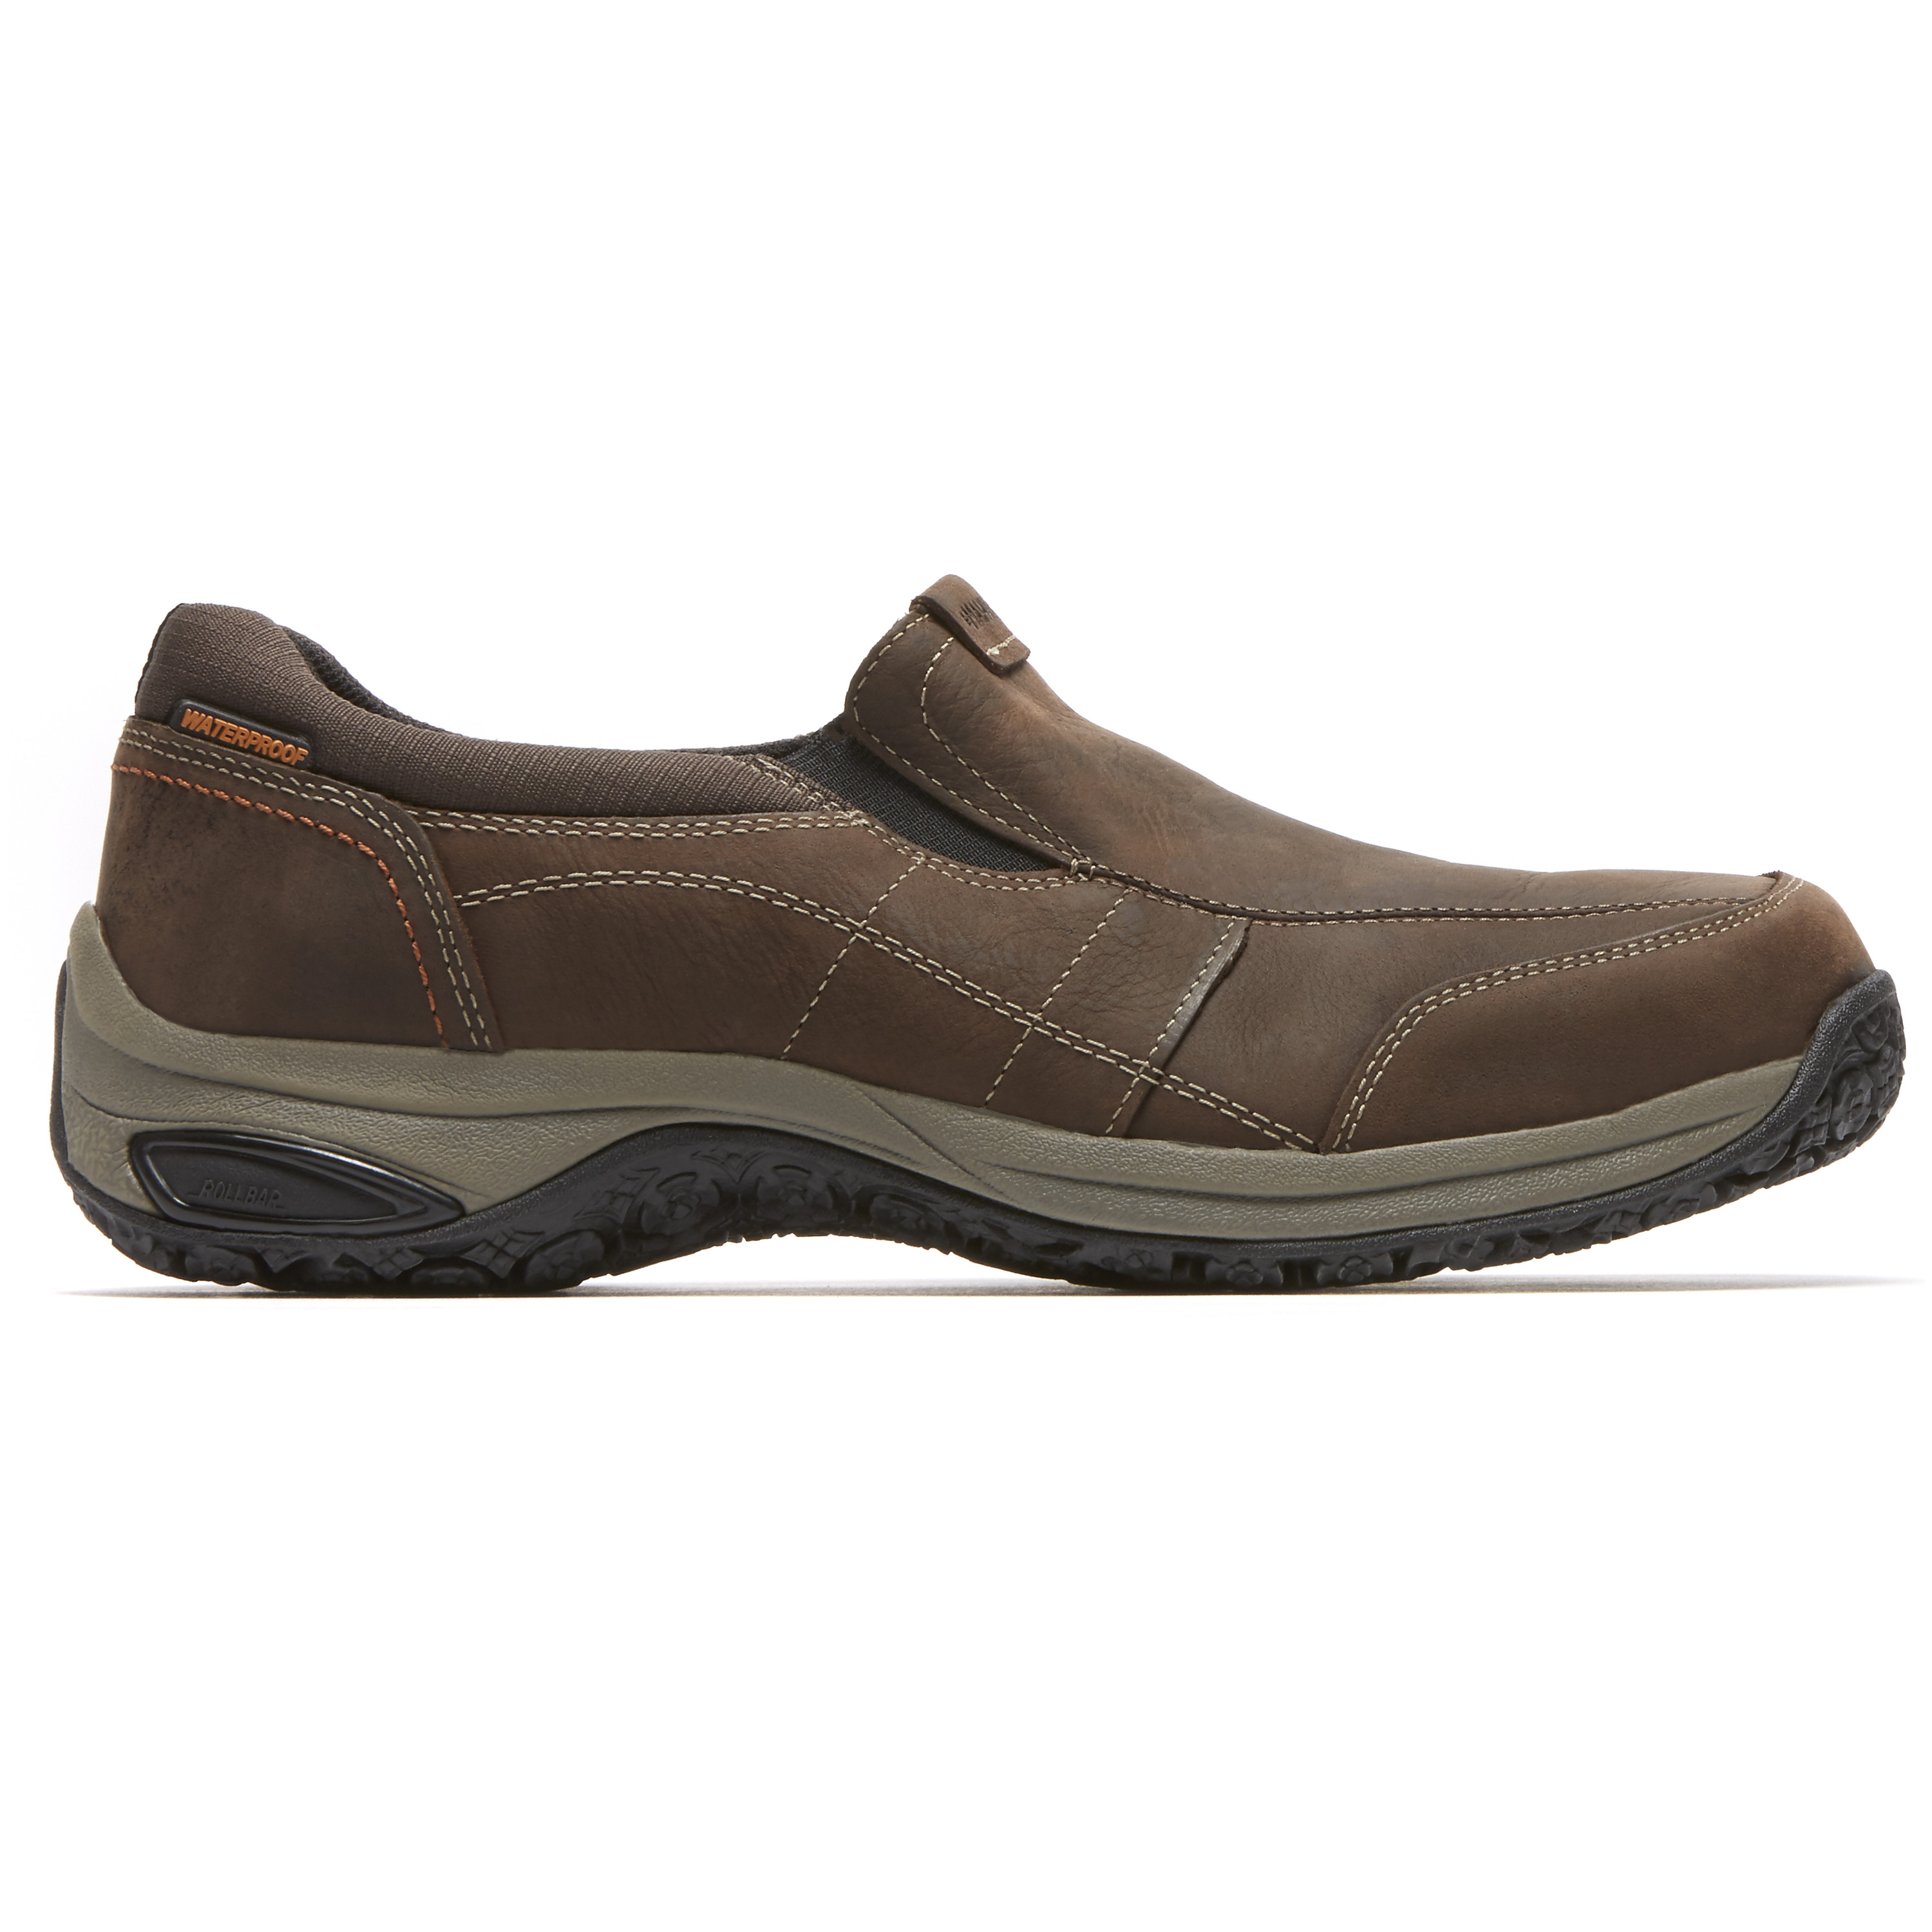 Dunham Men's Litchfield Waterproof Slip-On Casual Shoe Style DAN04BR | eBay